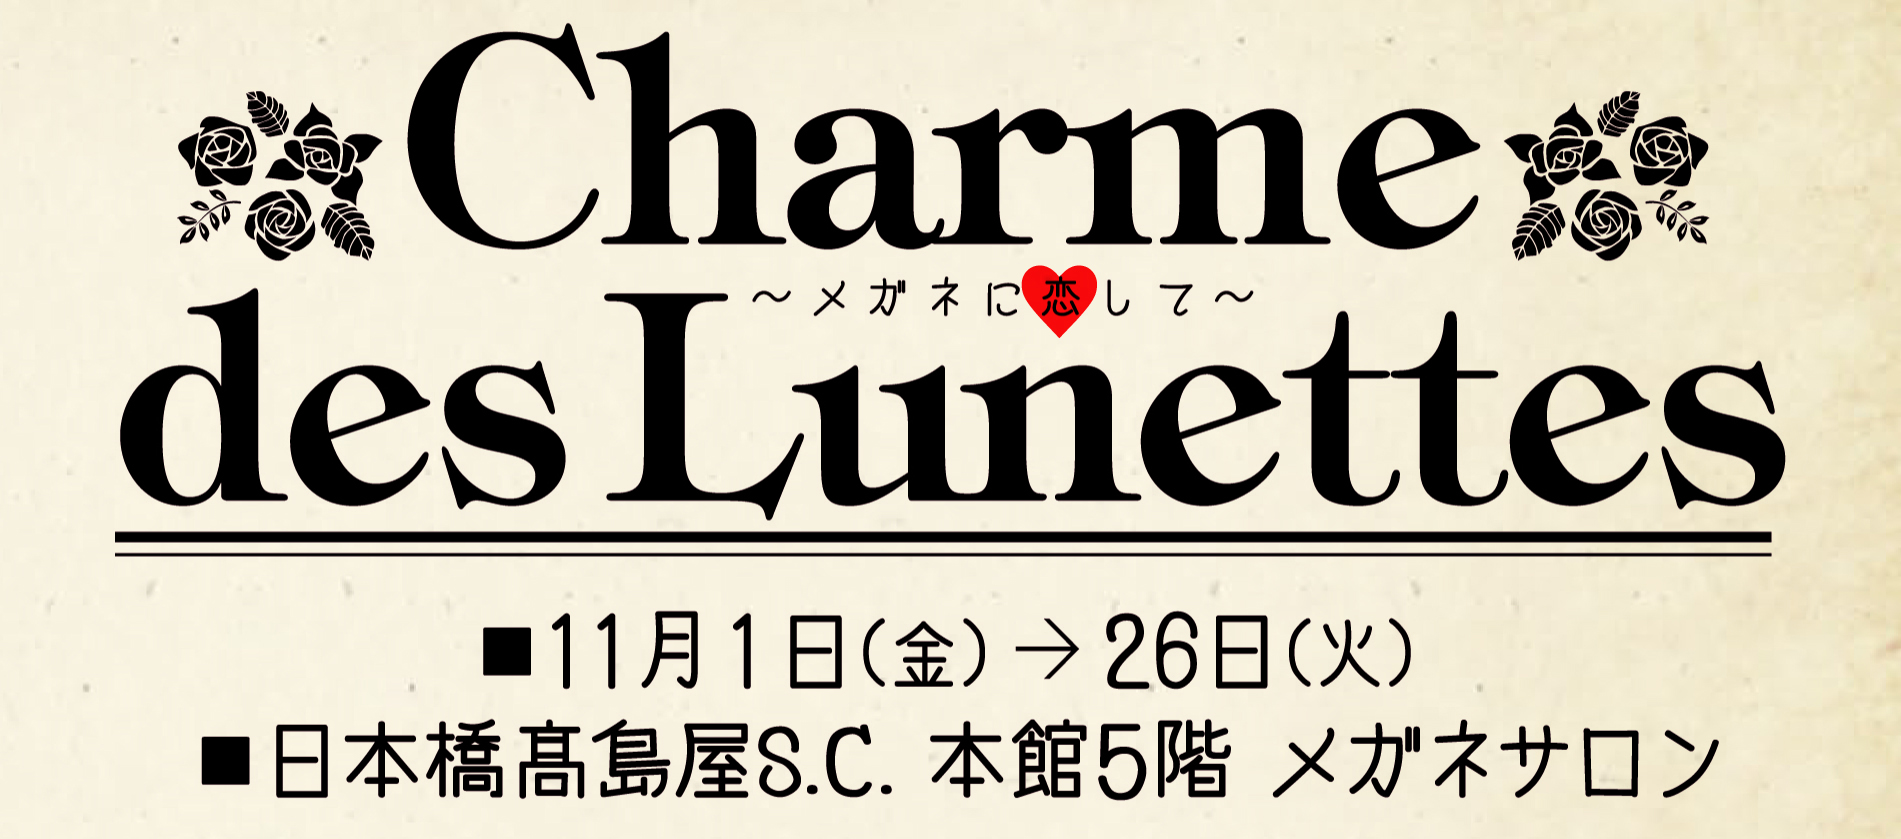 「Charme des Lunettes～メガネに恋して～」 日本橋髙島屋S.C.本館メガネサロンにて開催のお知らせ